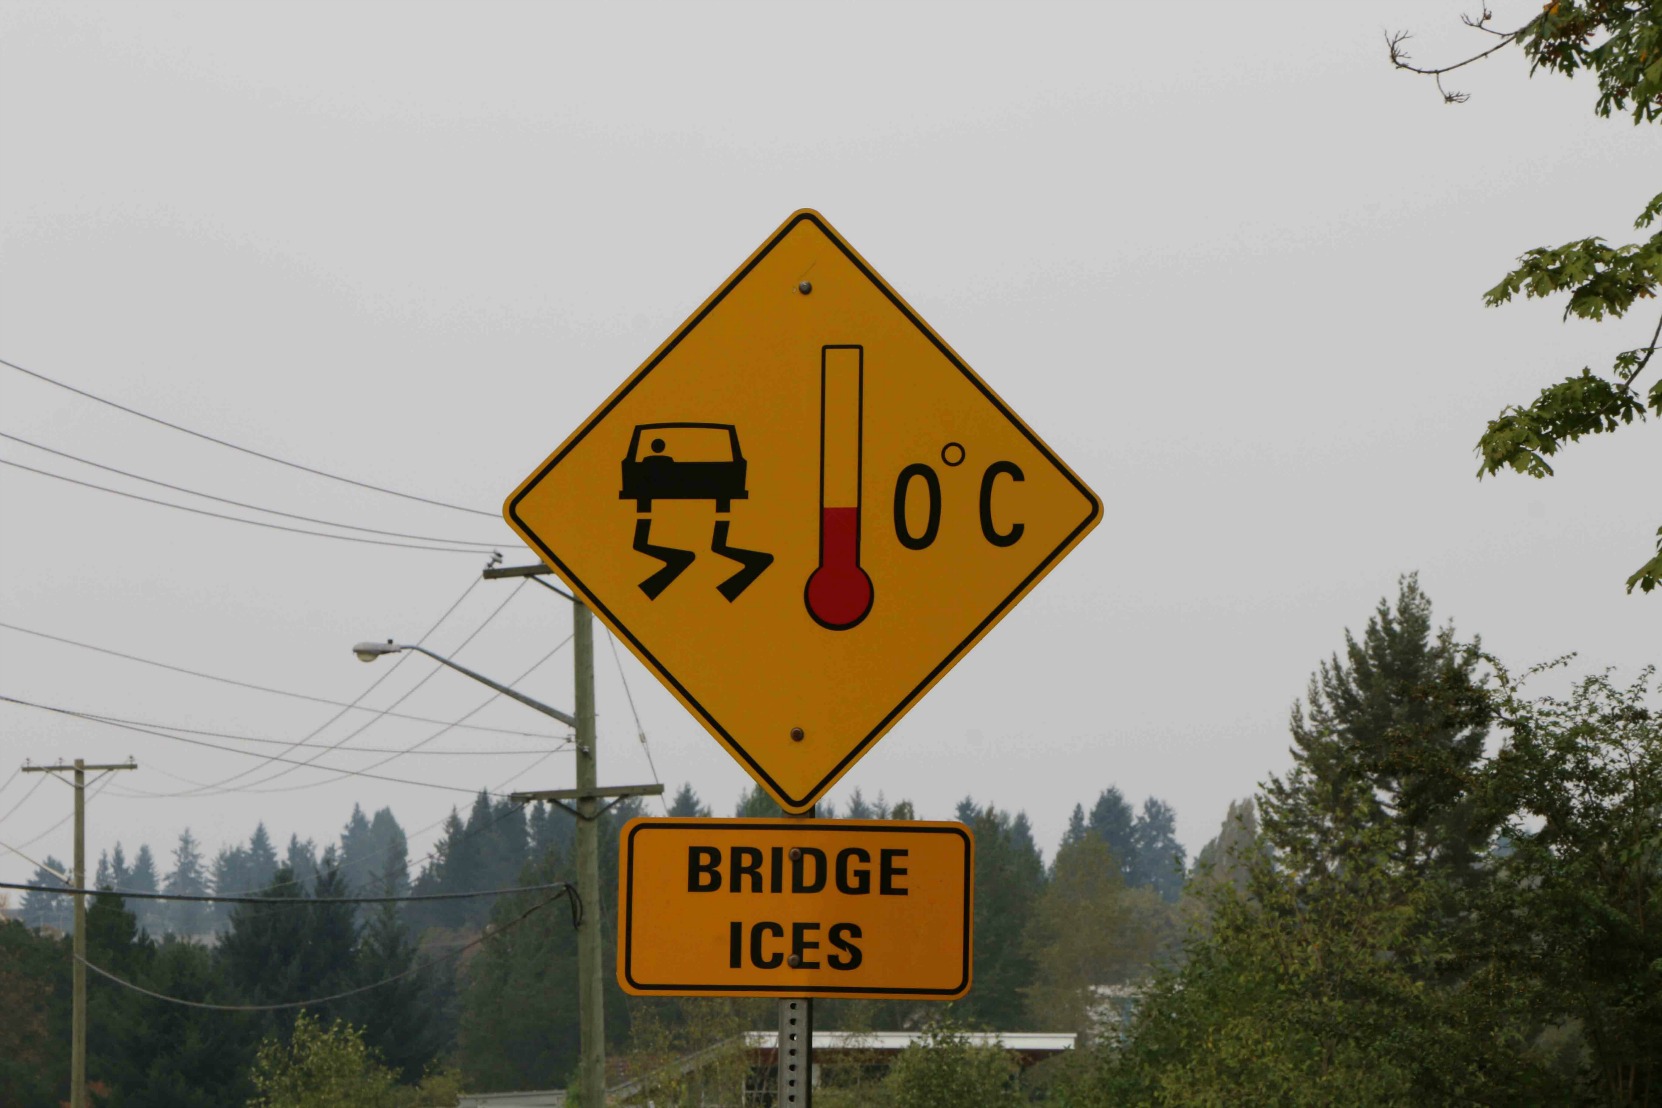 Bridge Ices, advisory sign, Nanaimo, B.C. (photo by West Coast Driver Training & Education)